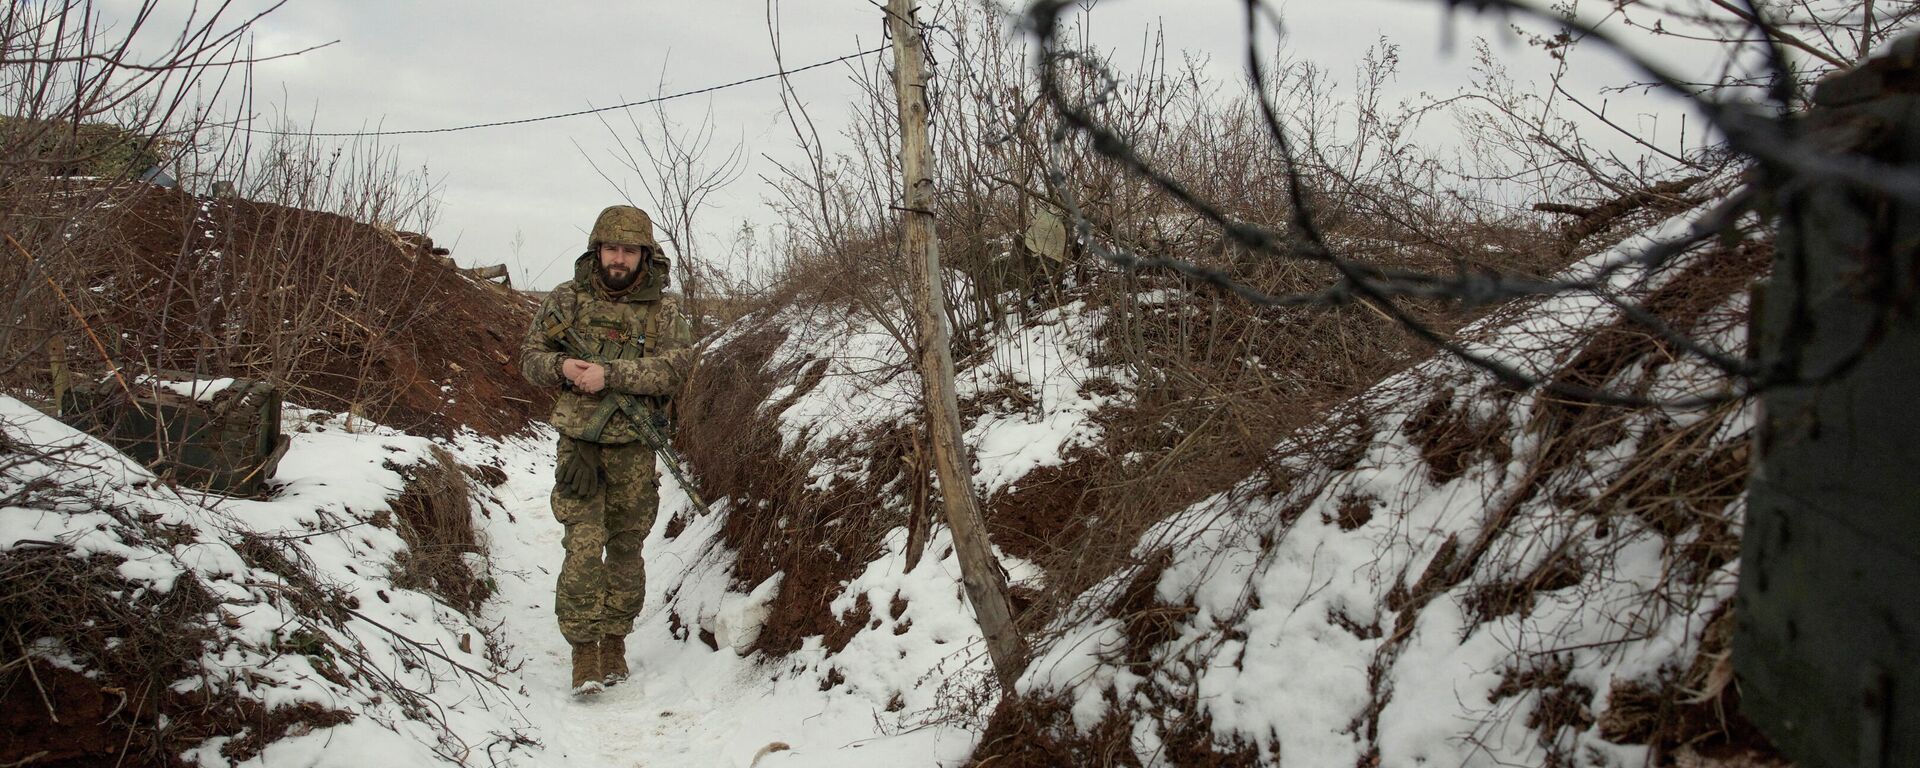 أحد عناصر القوات المسلحة الأوكرانية بالقرب من منطقة دونيتسك، أوكرانيا، 22 يناير 2022 - سبوتنيك عربي, 1920, 27.01.2022